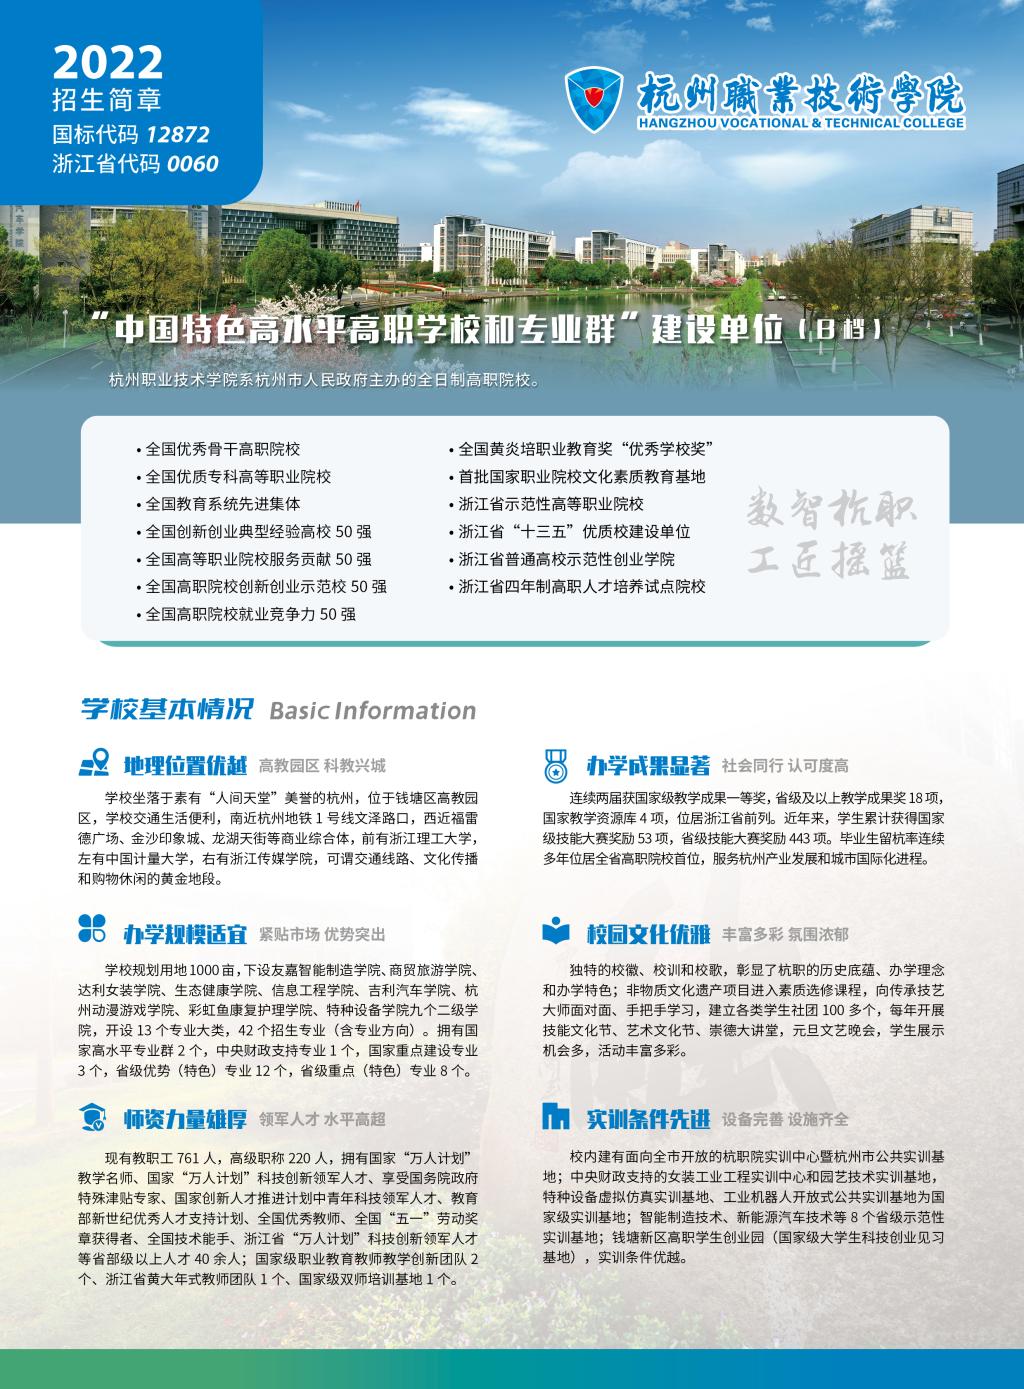 杭州职业技术学院2022年普通高校招生简章